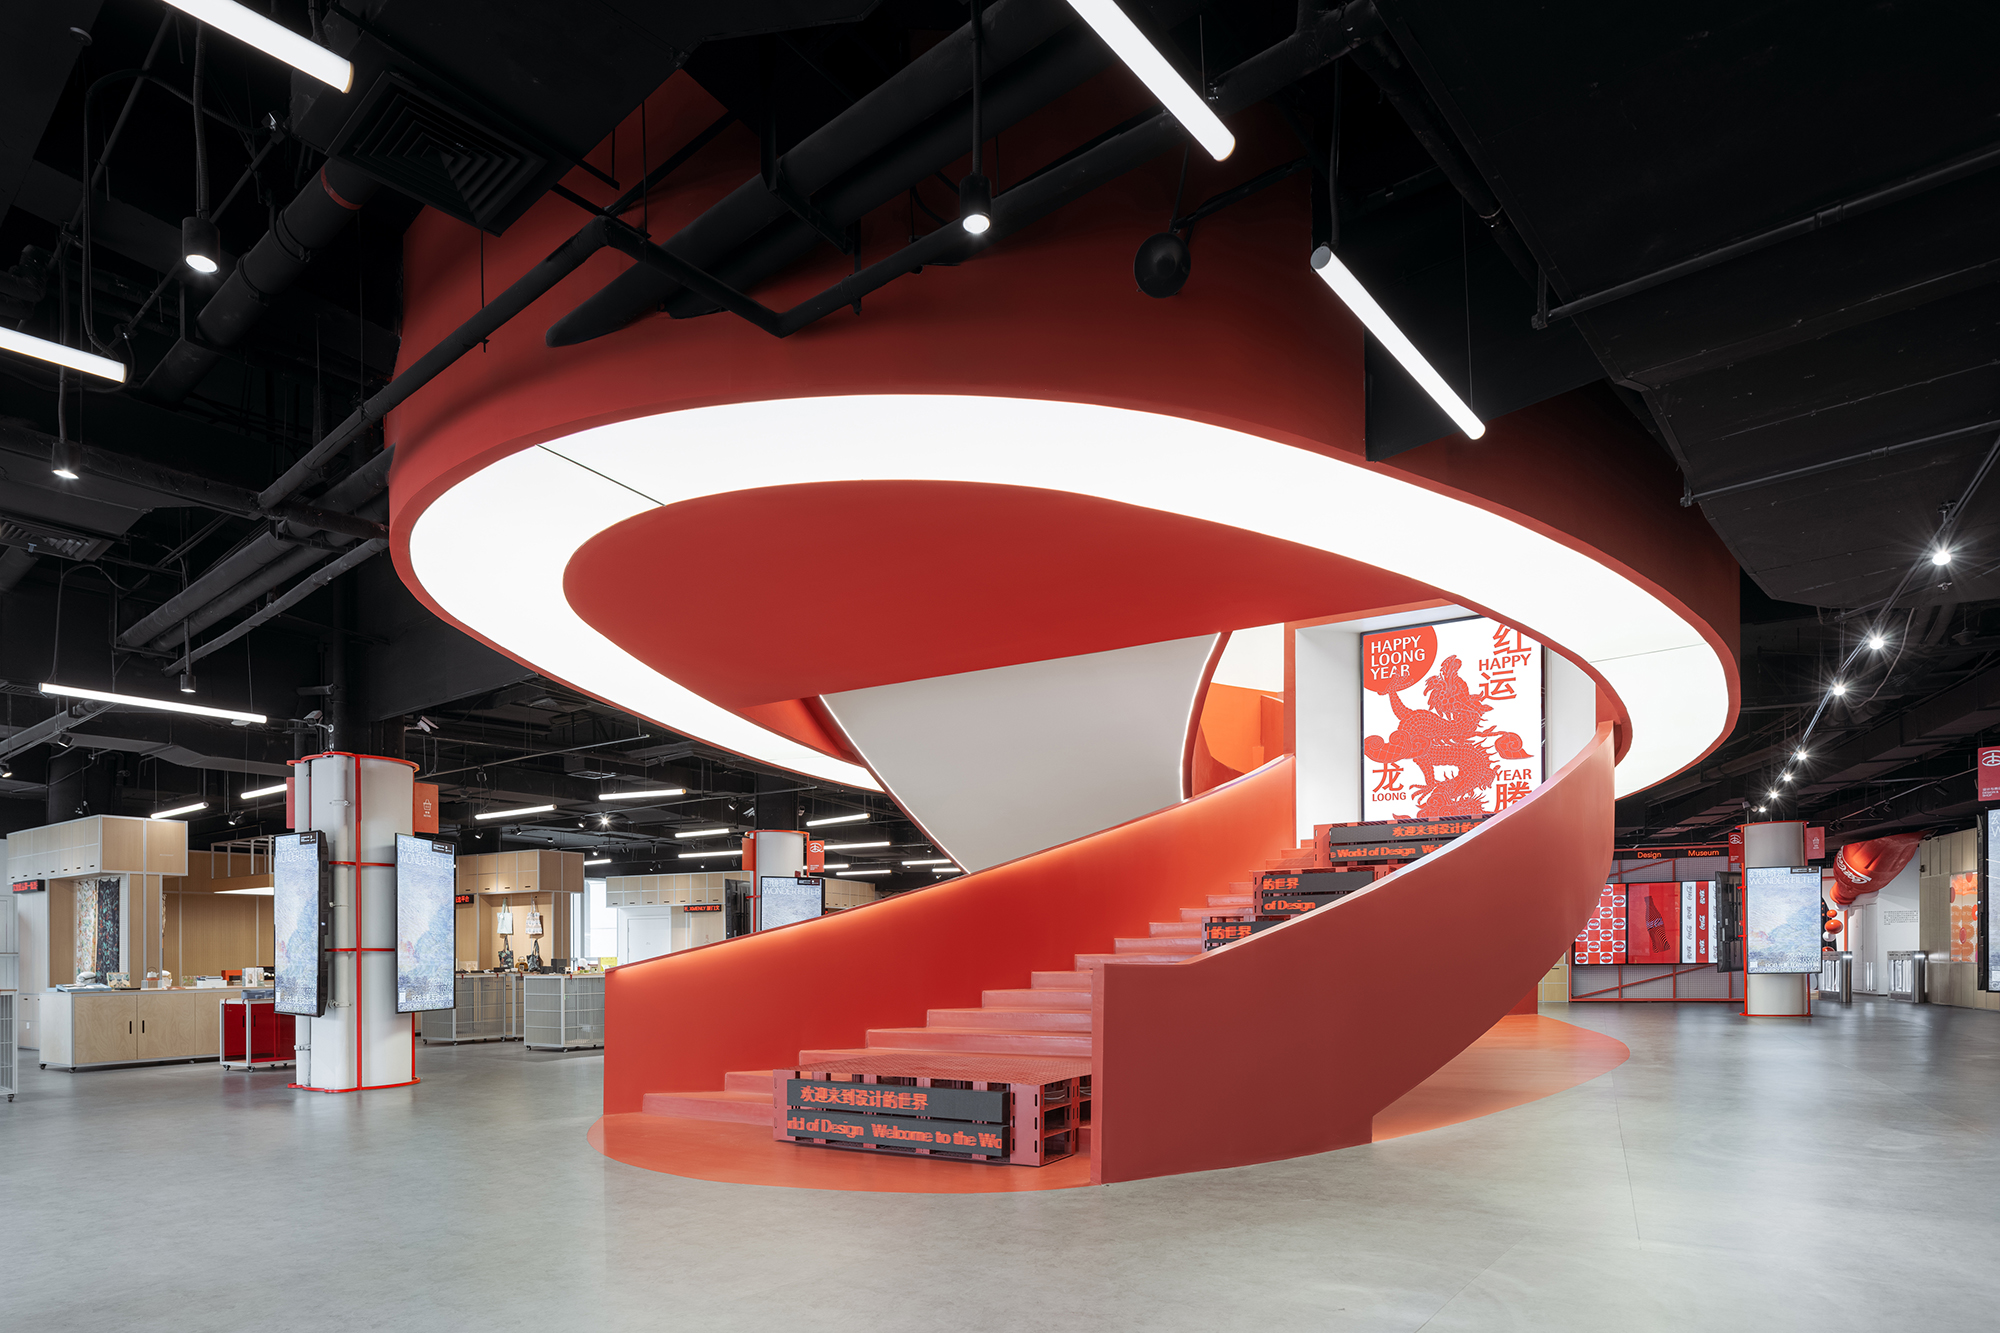 红点设计博物馆 · 厦门 | STEPS大台阶建筑、协作派对